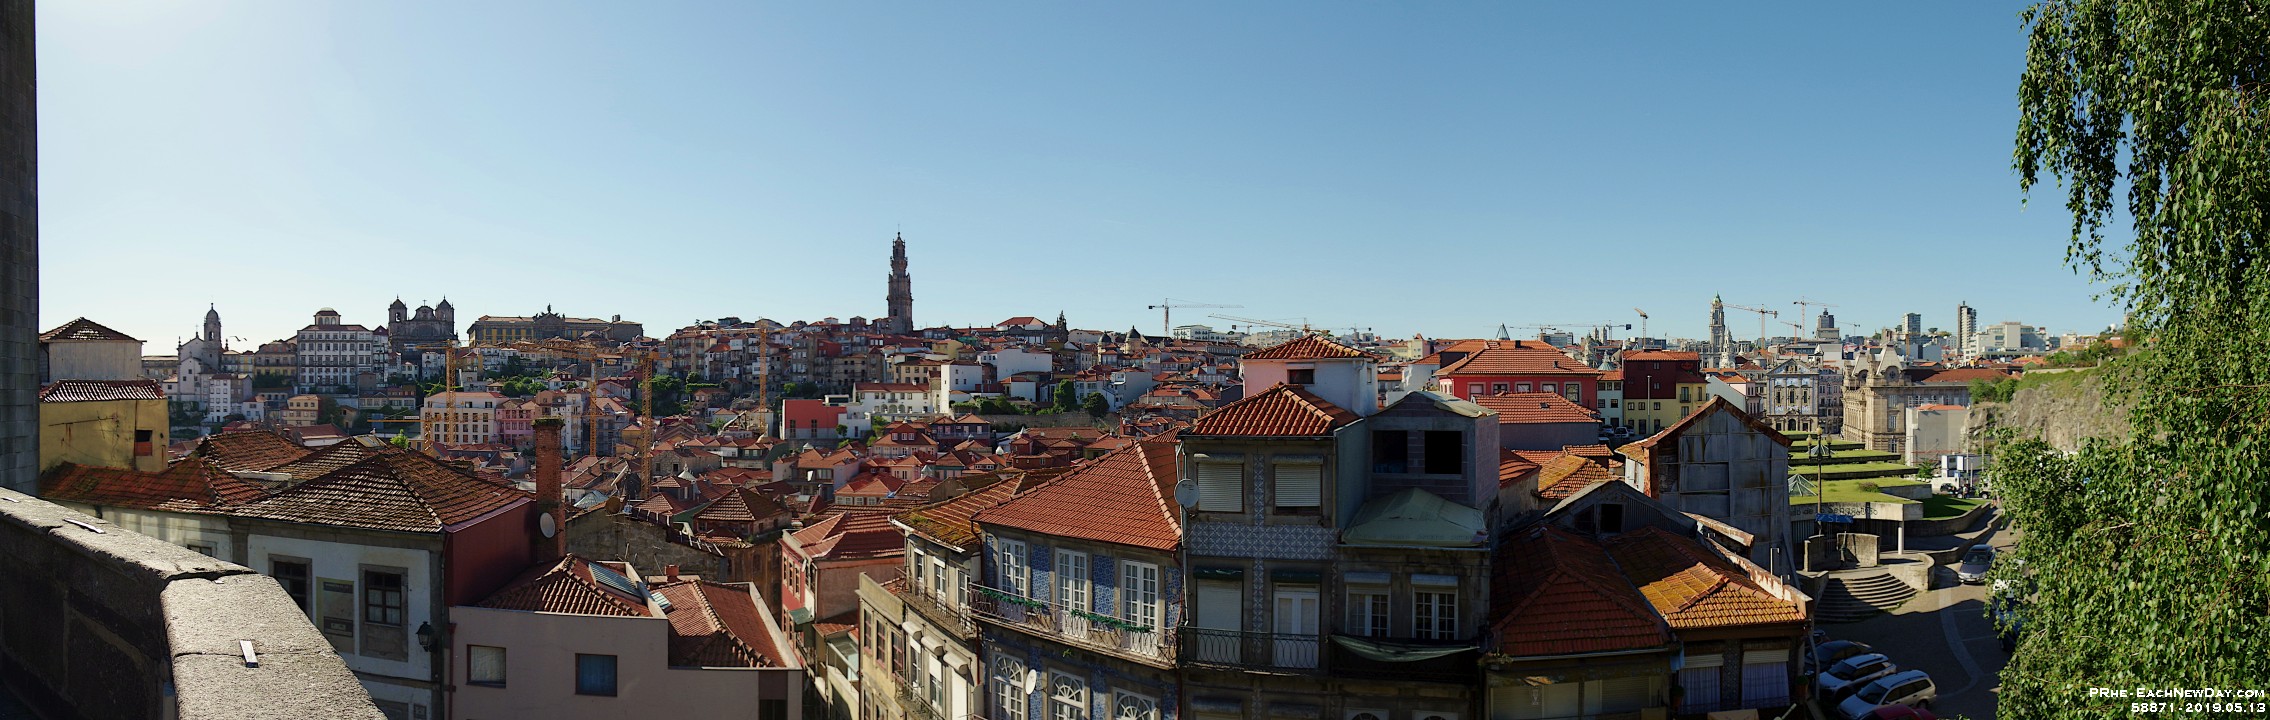 58871PaUsmLe - Walking to the Douro River - Porto, Portugal